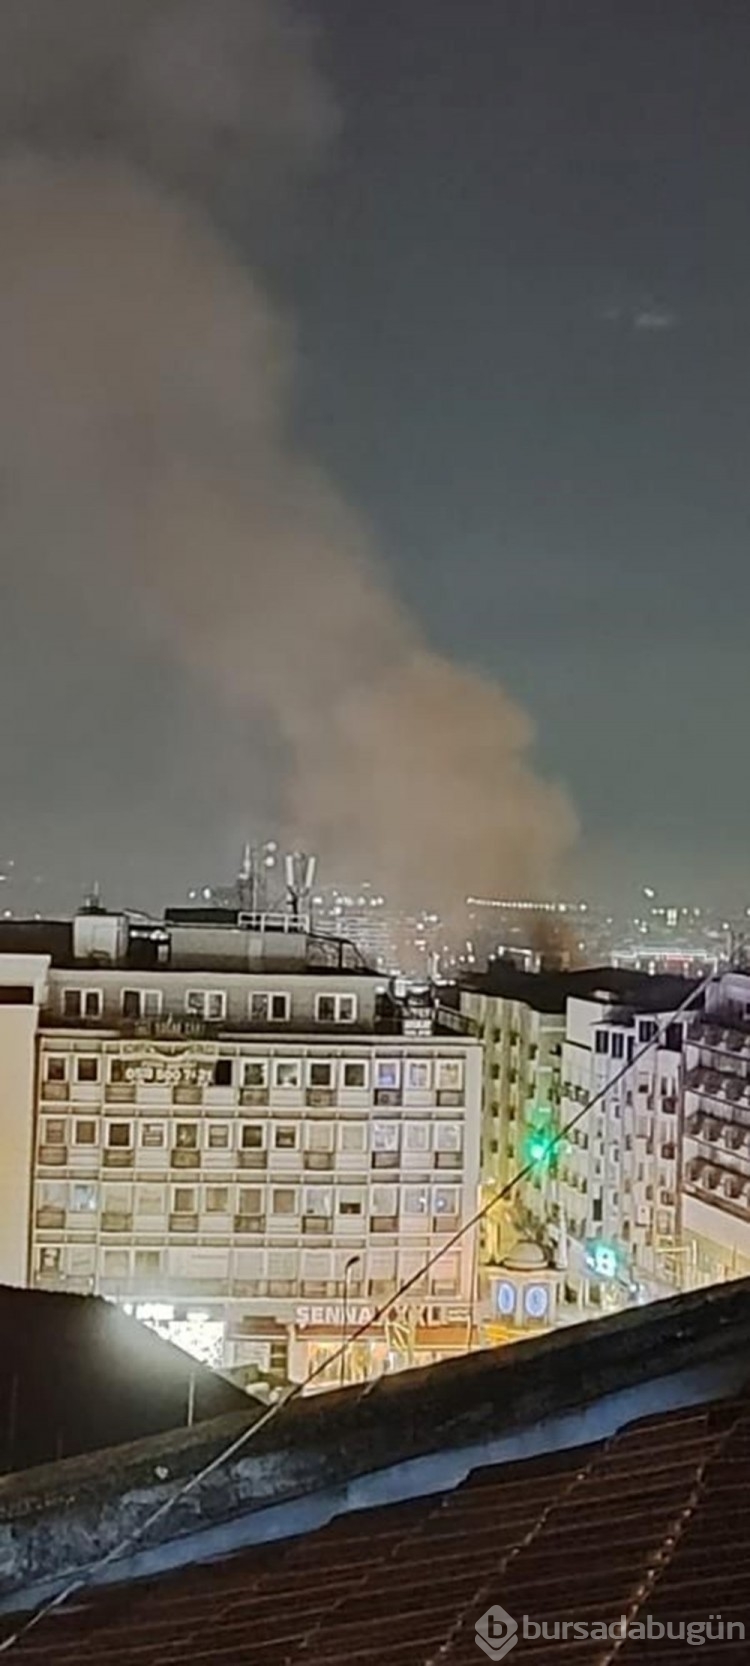 Bursa'da iş hanında gece yarısı yangın paniği
